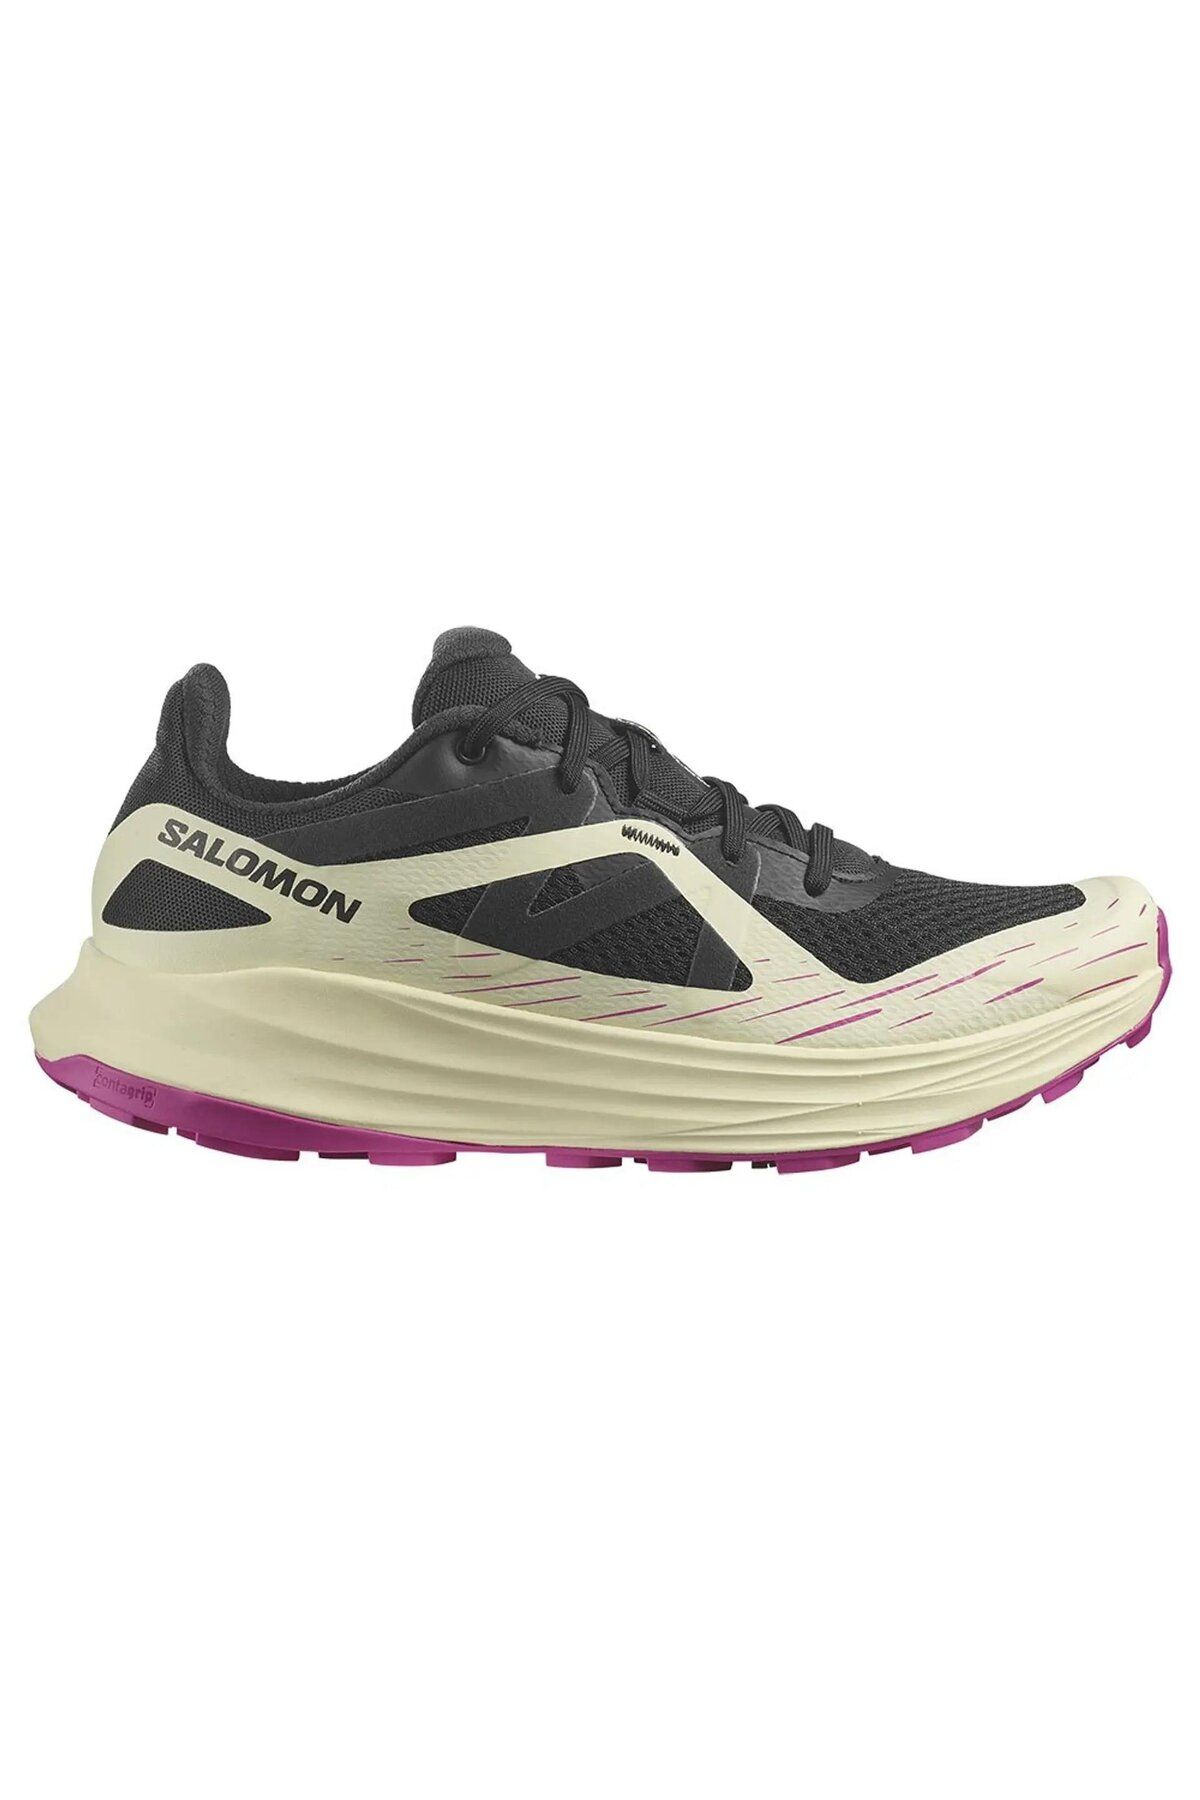 Salomon Ultra Flow W Kadın Spor Ayakkabısı L47450900